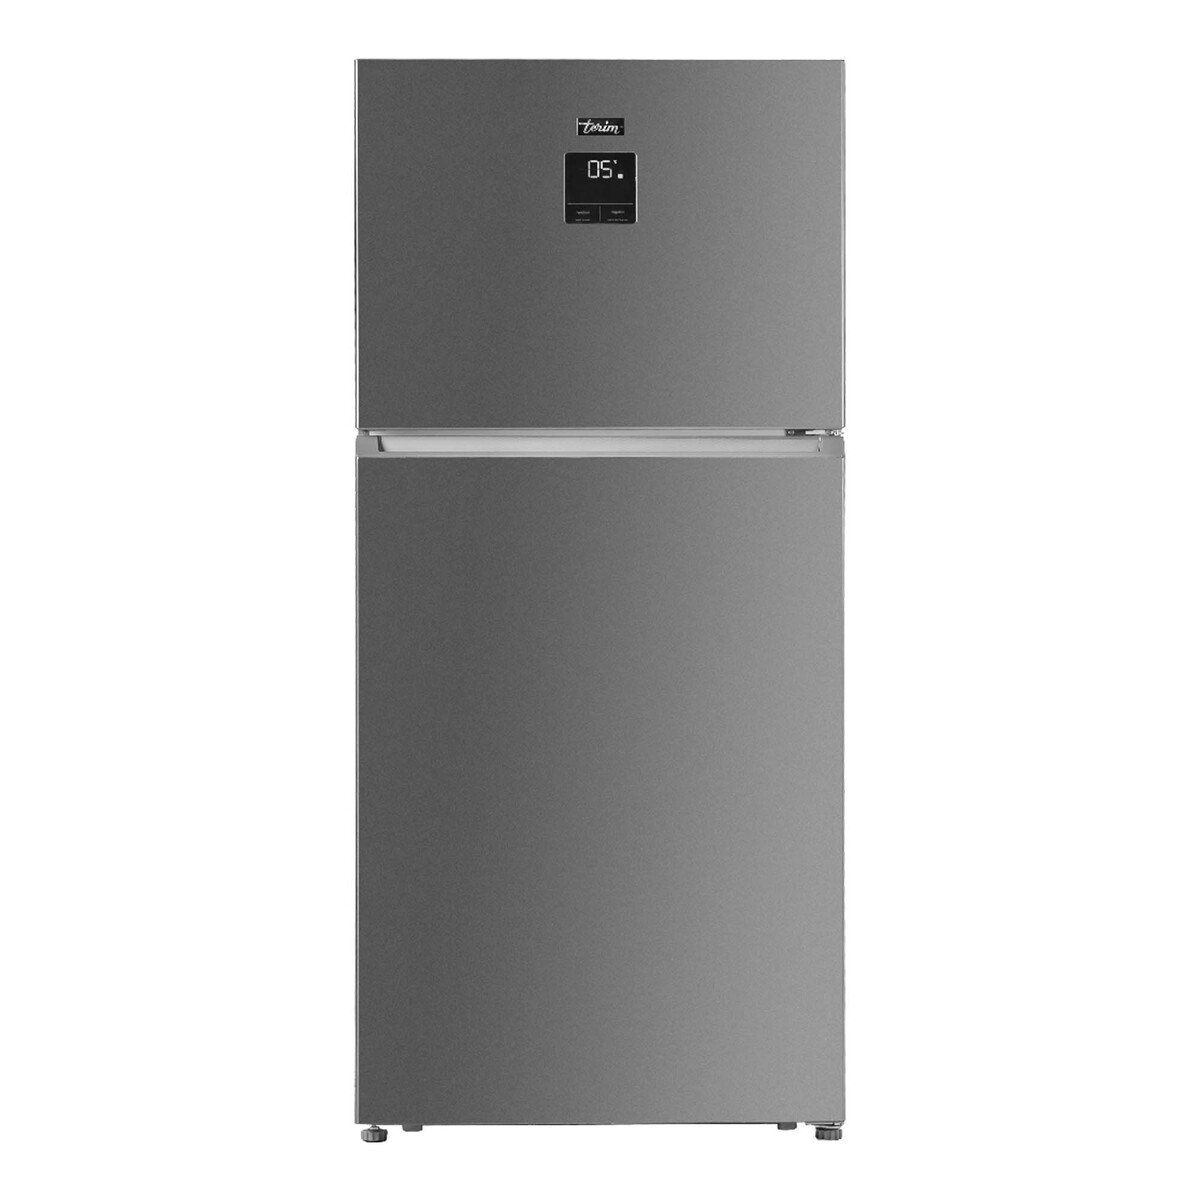 Terim Double Door Refrigerator TERR700SS 700LTR